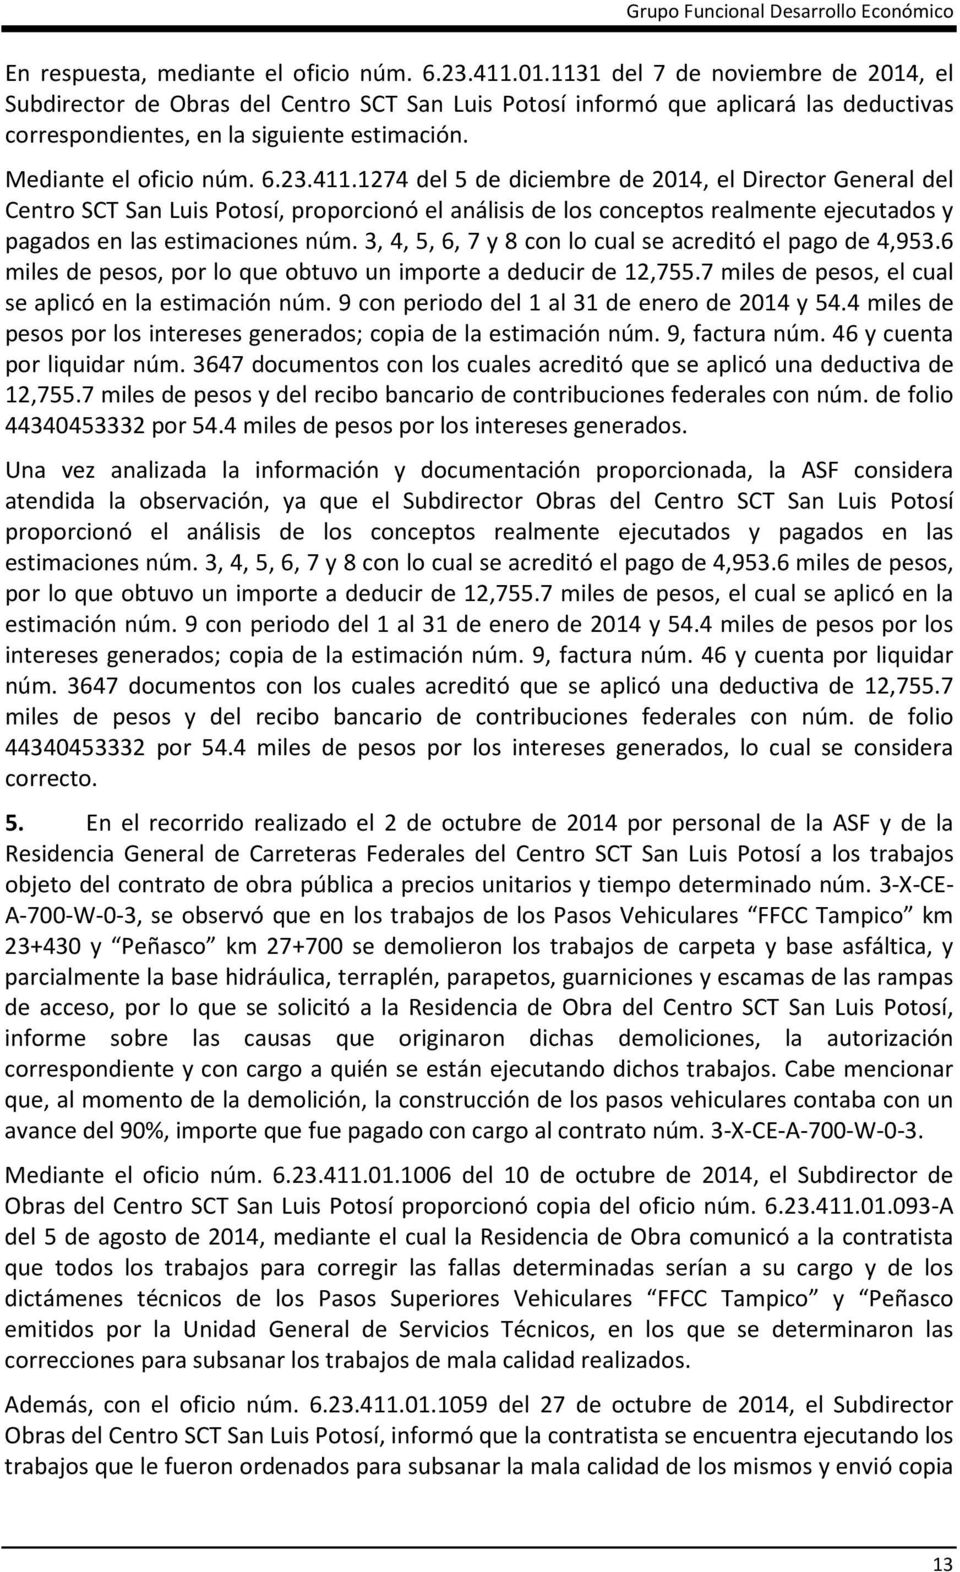 411.1274 del 5 de diciembre de 2014, el Director General del Centro SCT San Luis Potosí, proporcionó el análisis de los conceptos realmente ejecutados y pagados en las estimaciones núm.